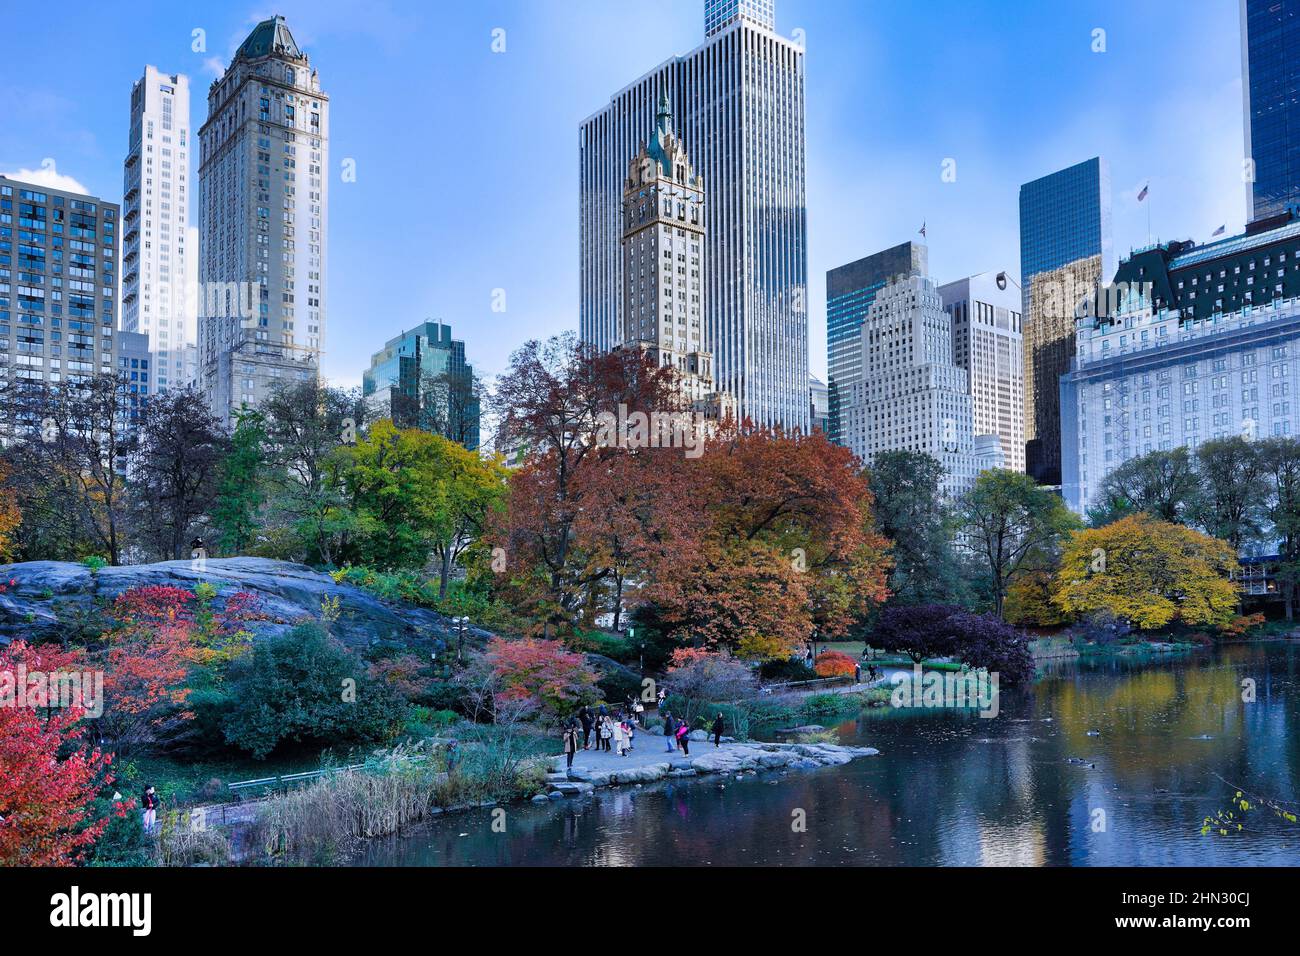 New York Central Park, The Pond à l'angle de 5th Avenue et 59th Street, avec des couleurs d'automne sur les arbres Banque D'Images